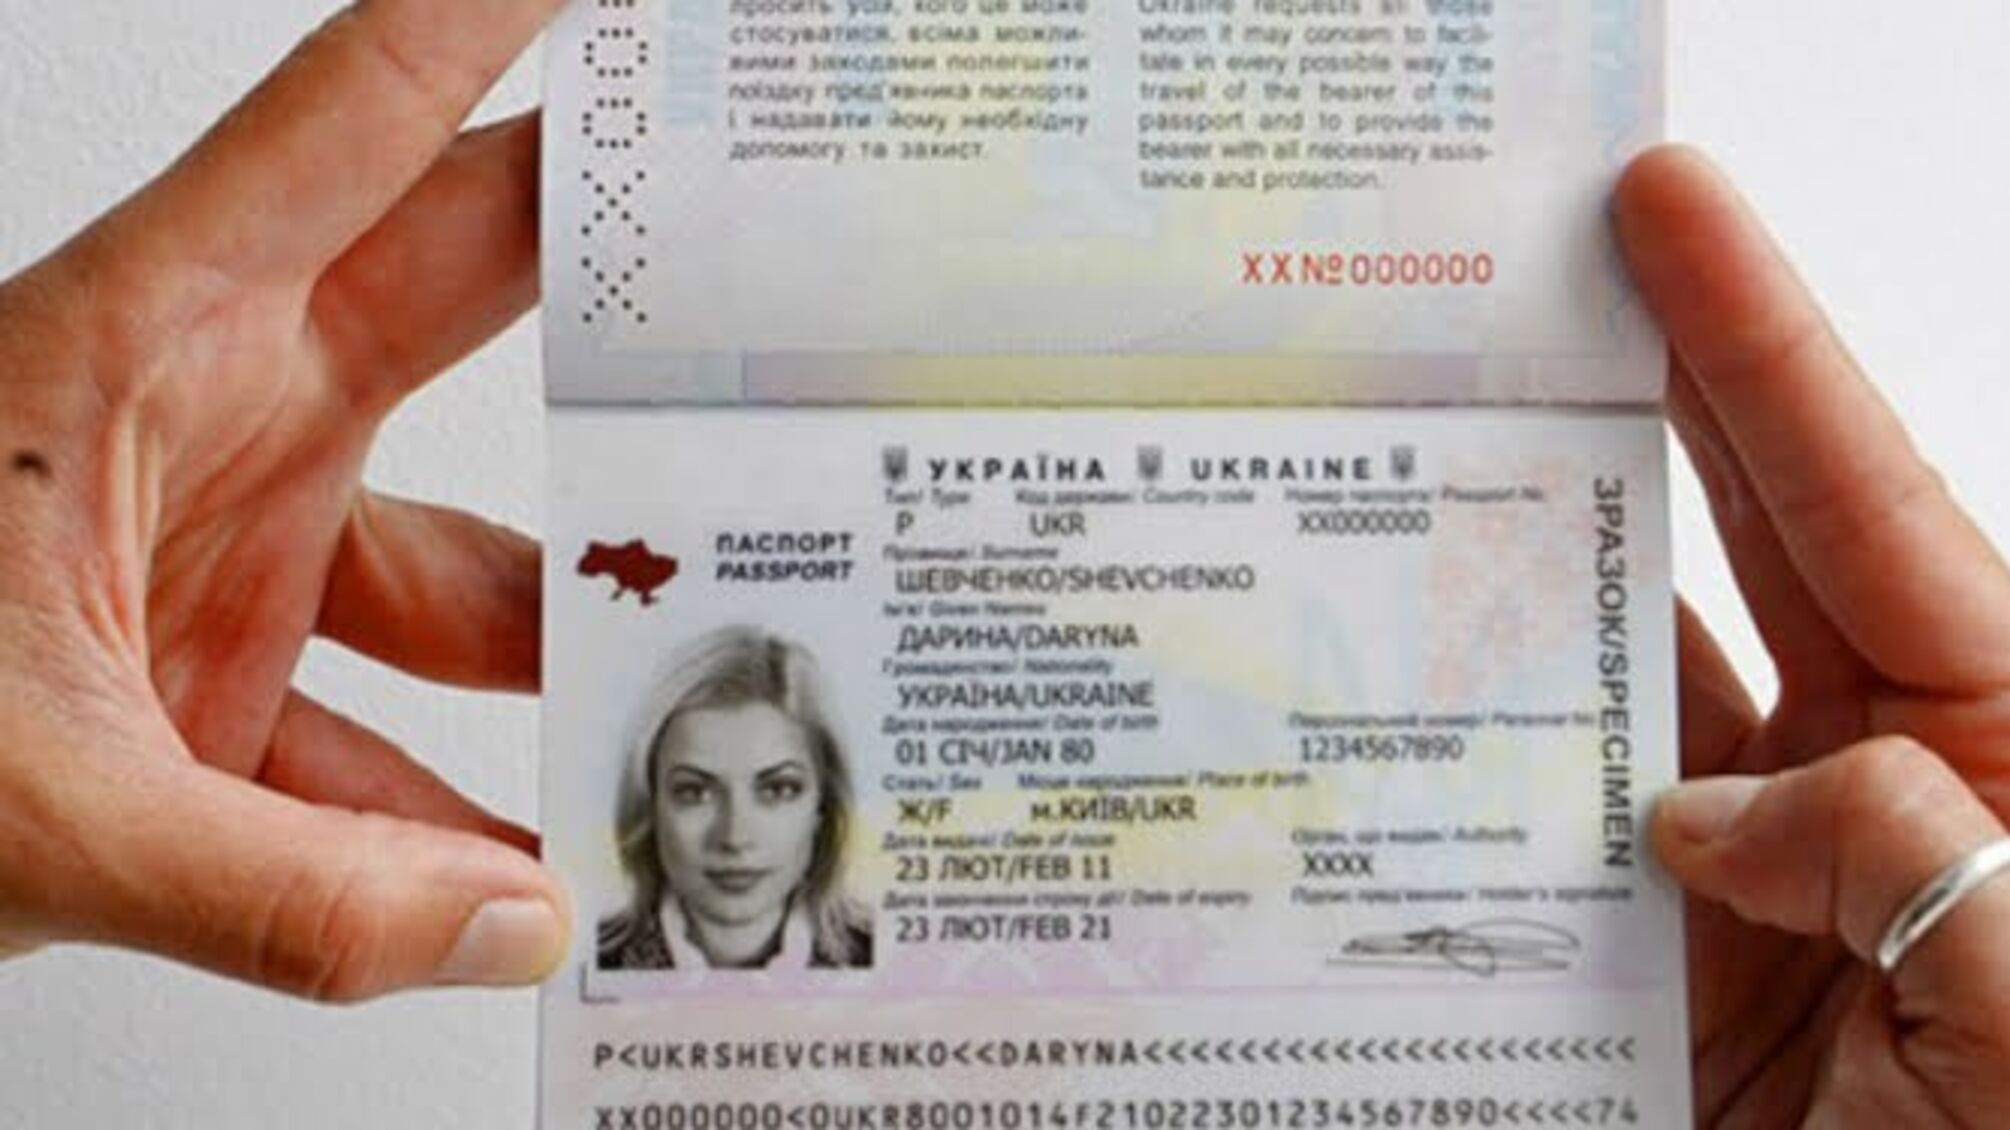 Українські спецслужби заблокували видачу біометричних паспортів по всій країні